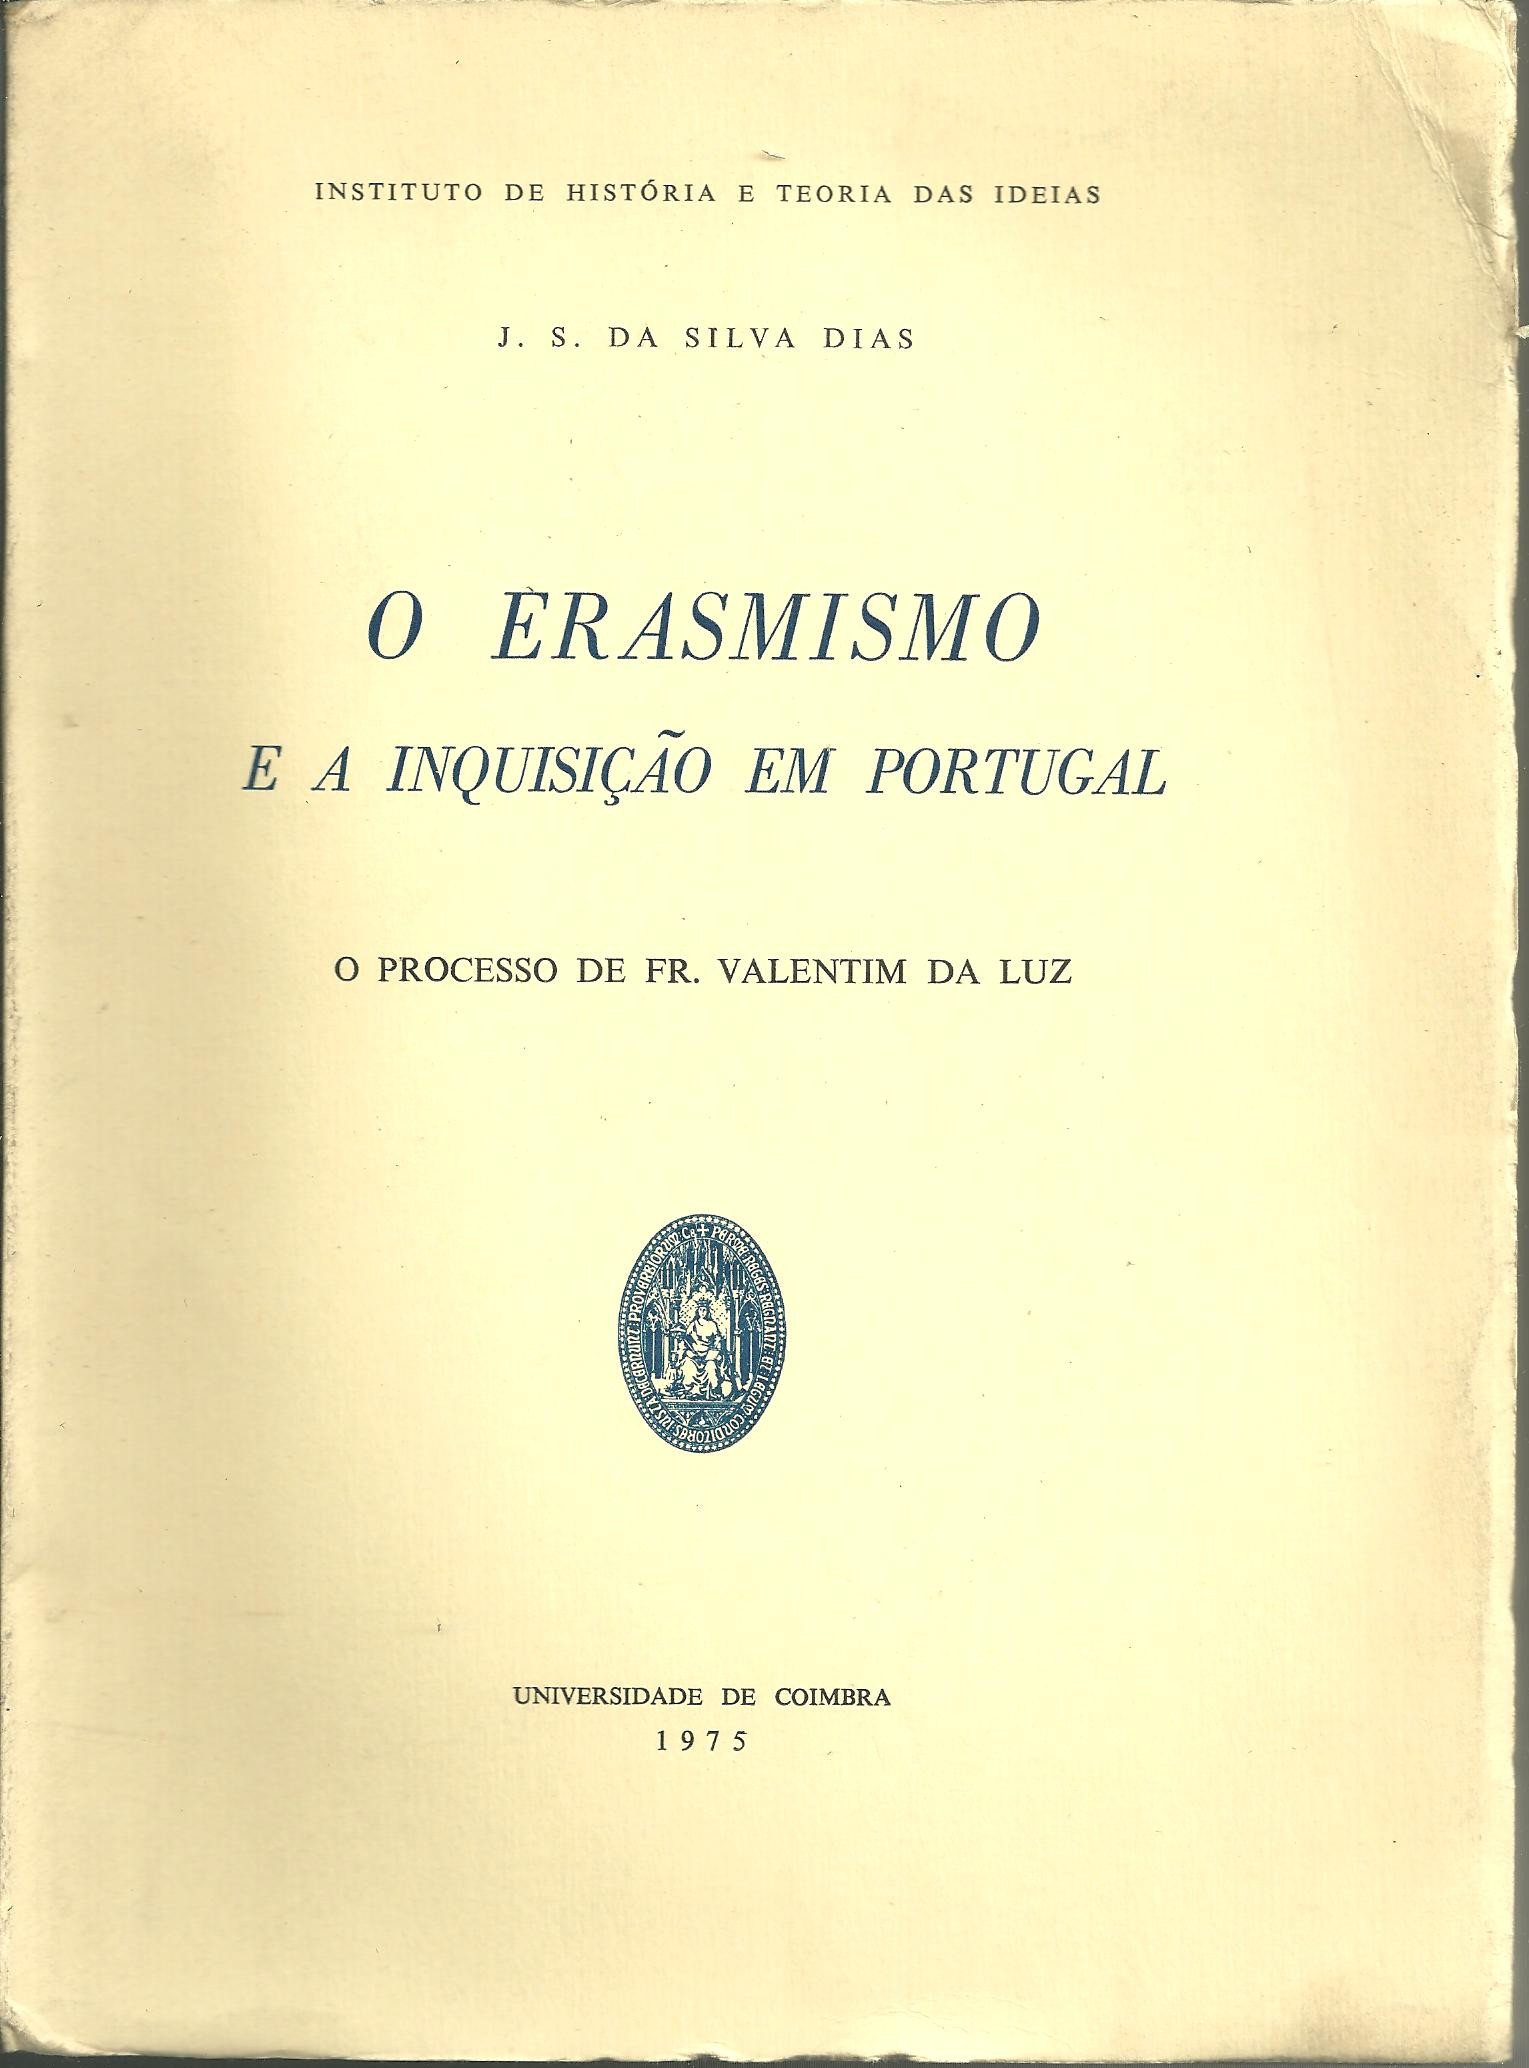 O ERASMISMO E A INQUISIÇAO EM PORTUGAL. O PROCESSO DE FR. VALENTIM DA LUZ.